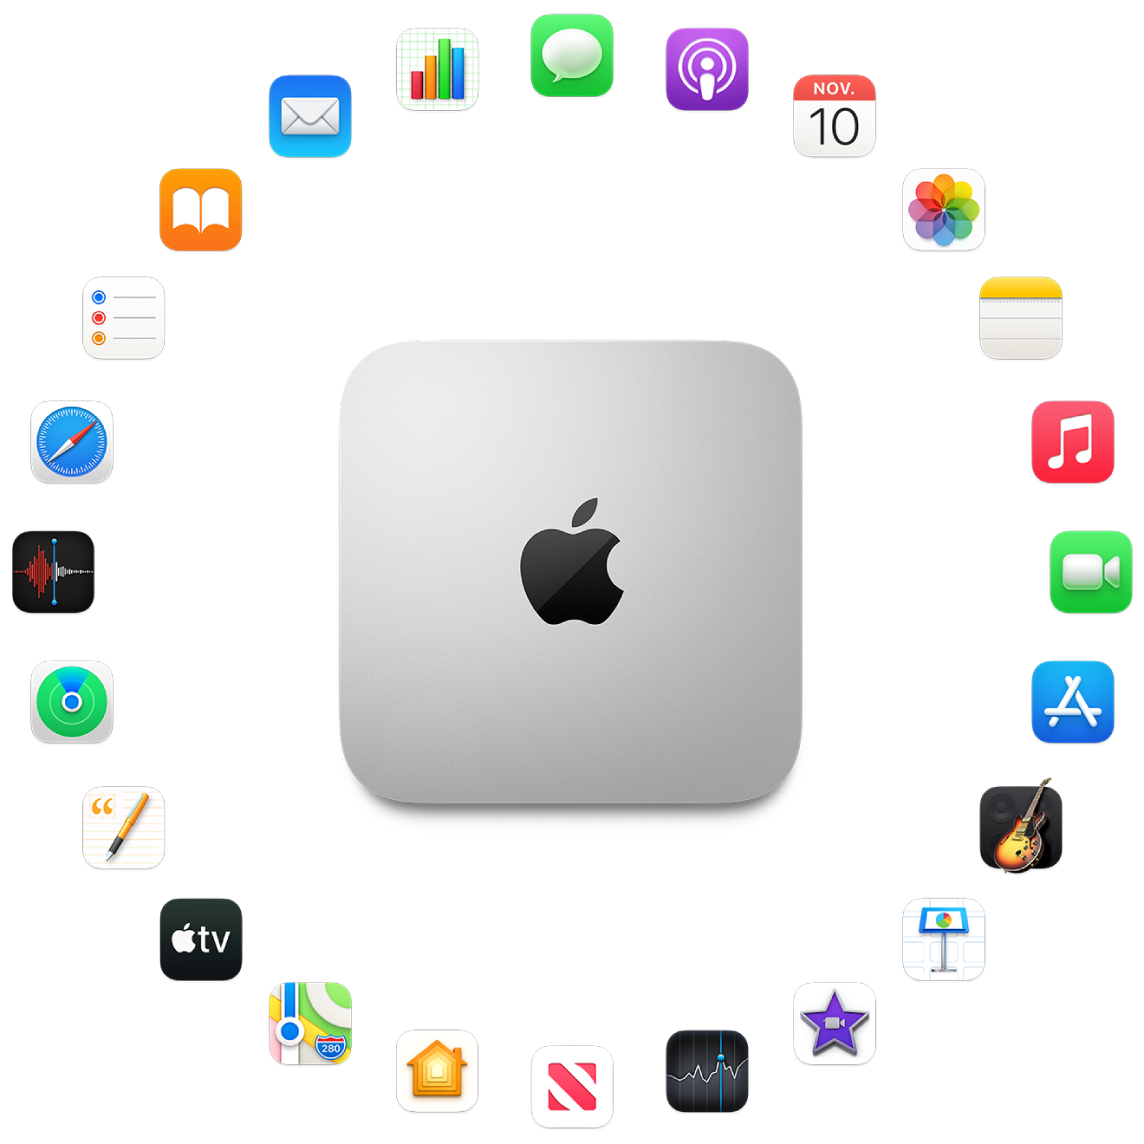 Un Mac mini înconjurat de pictogramele aplicațiilor integrate, descrise în secțiunile următoare.